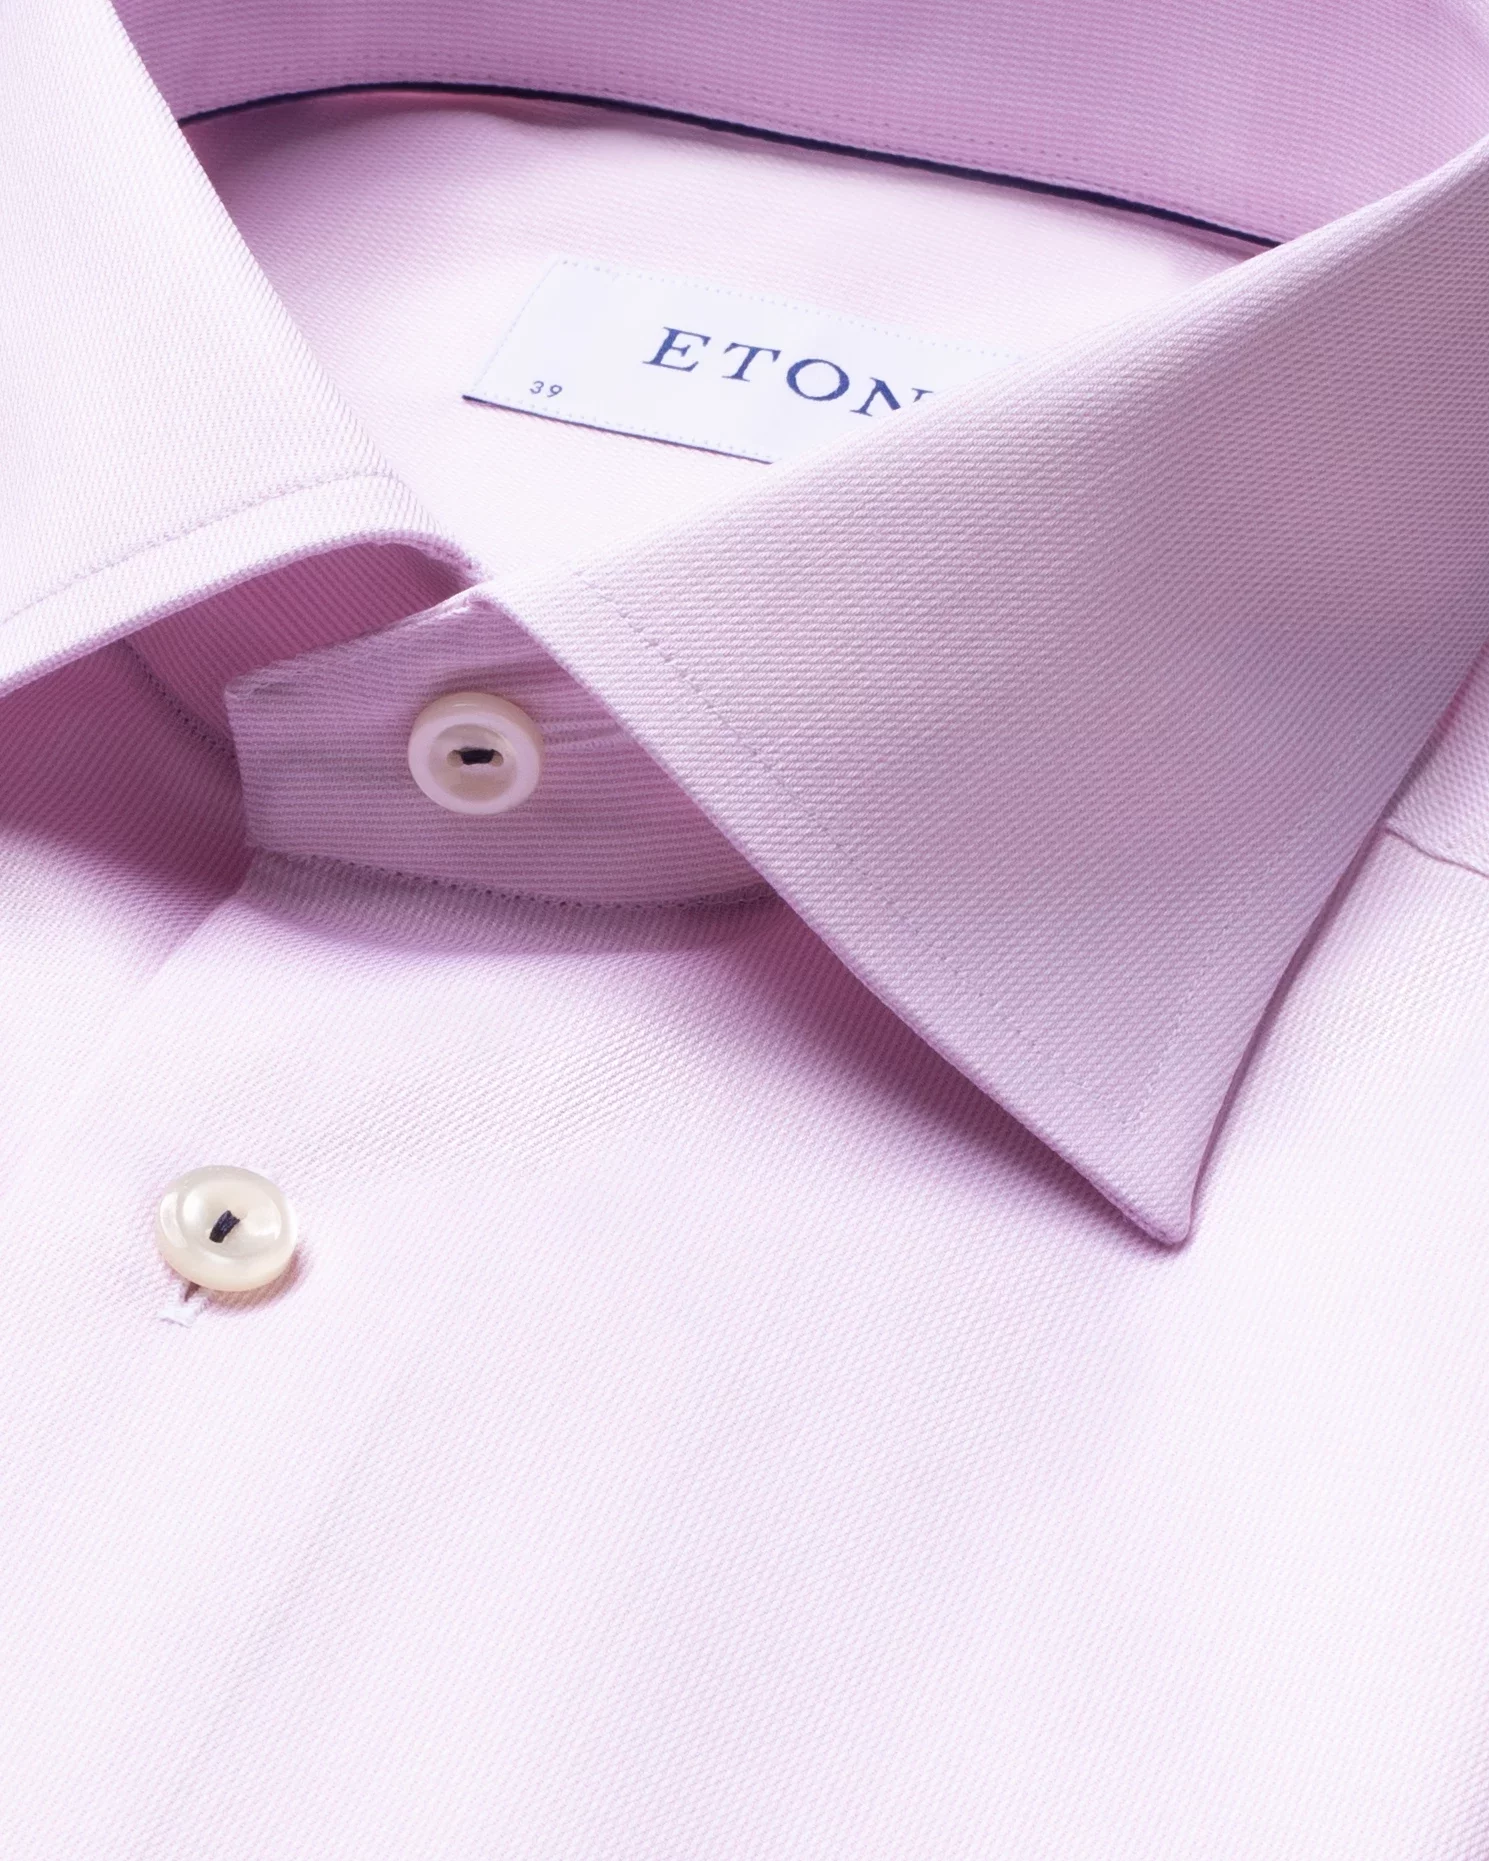 Eton - pink royal twill shirt